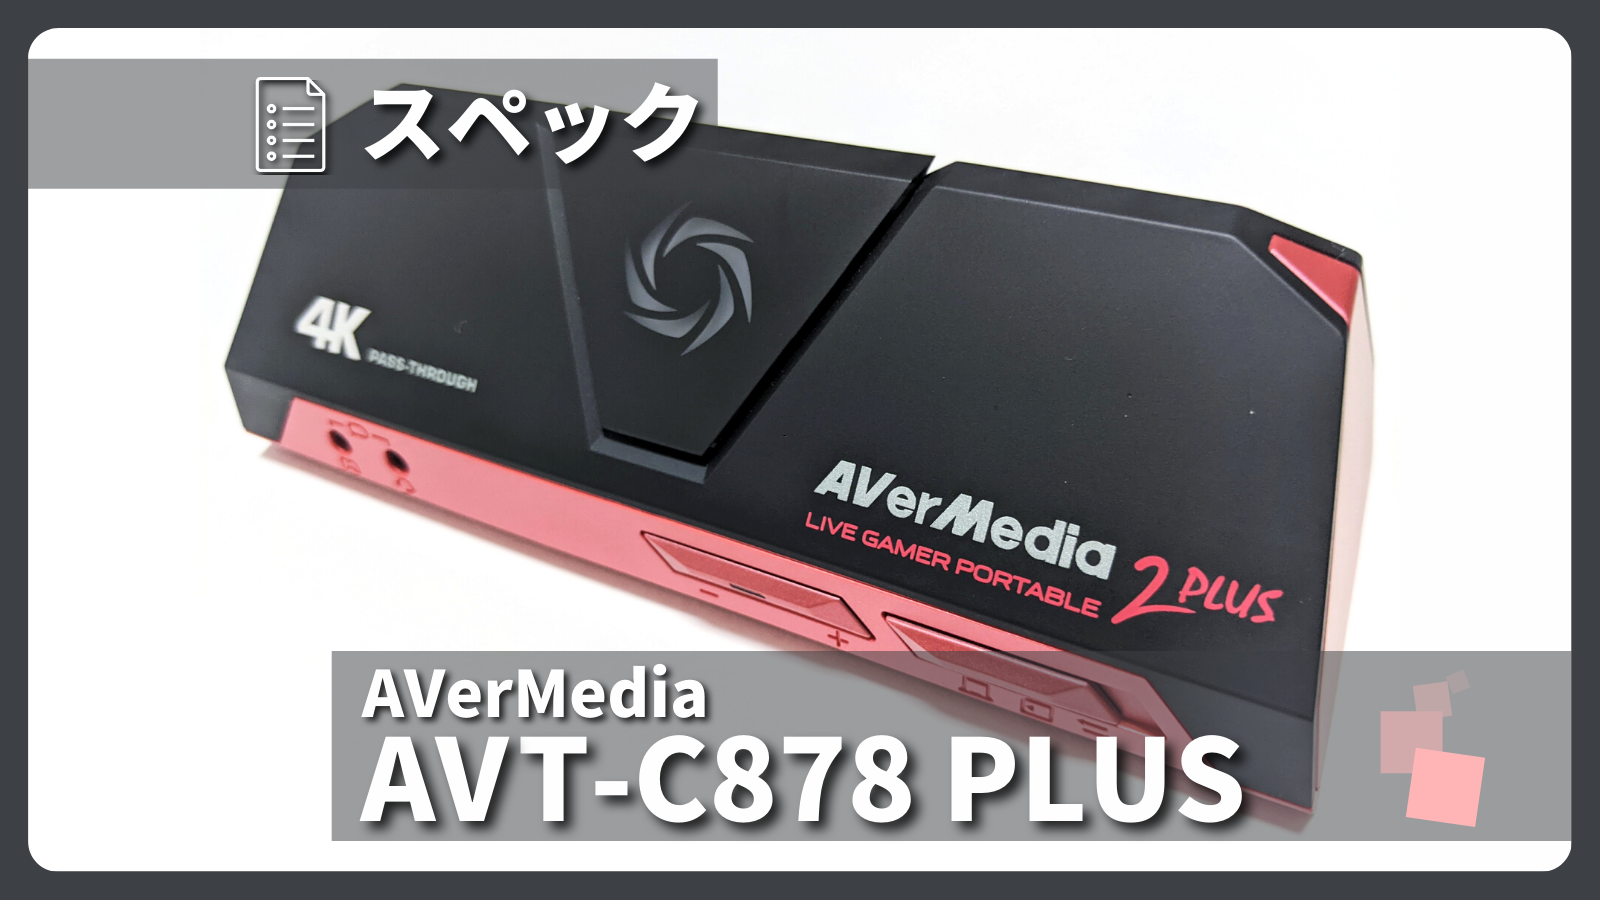 アイキャッチ画像・AVerMedia AVT-C878 PLUS スペック紹介